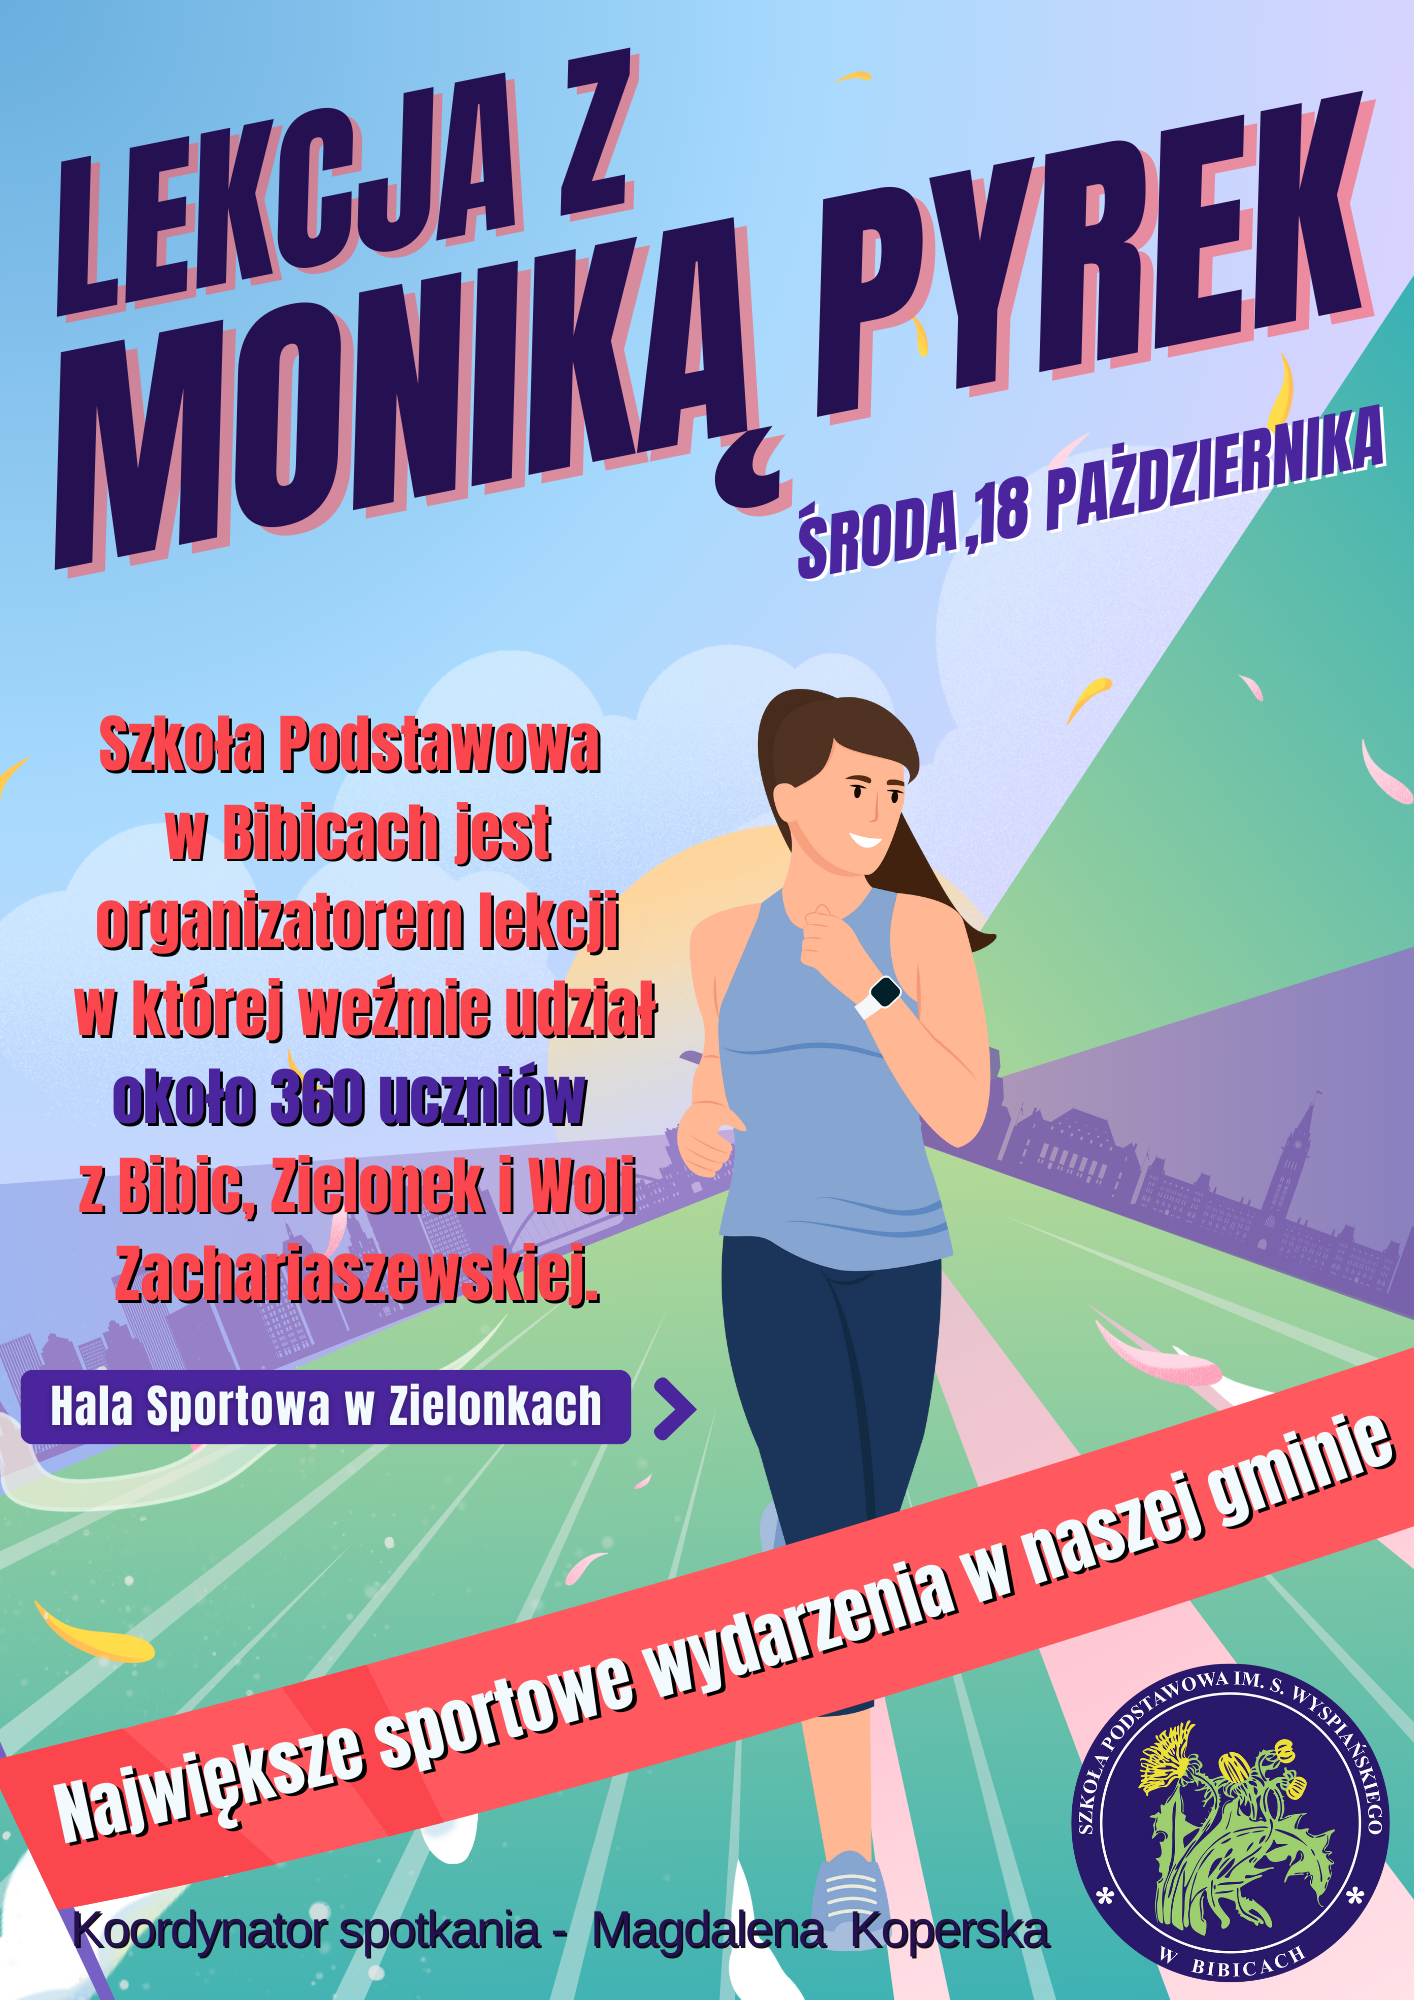 Już jutro lekcja WF-u z mistrzynią lekkoatletyki Moniką Pyrek – zajęcia pokazowe dla uczniów 3 szkół naszej gminy